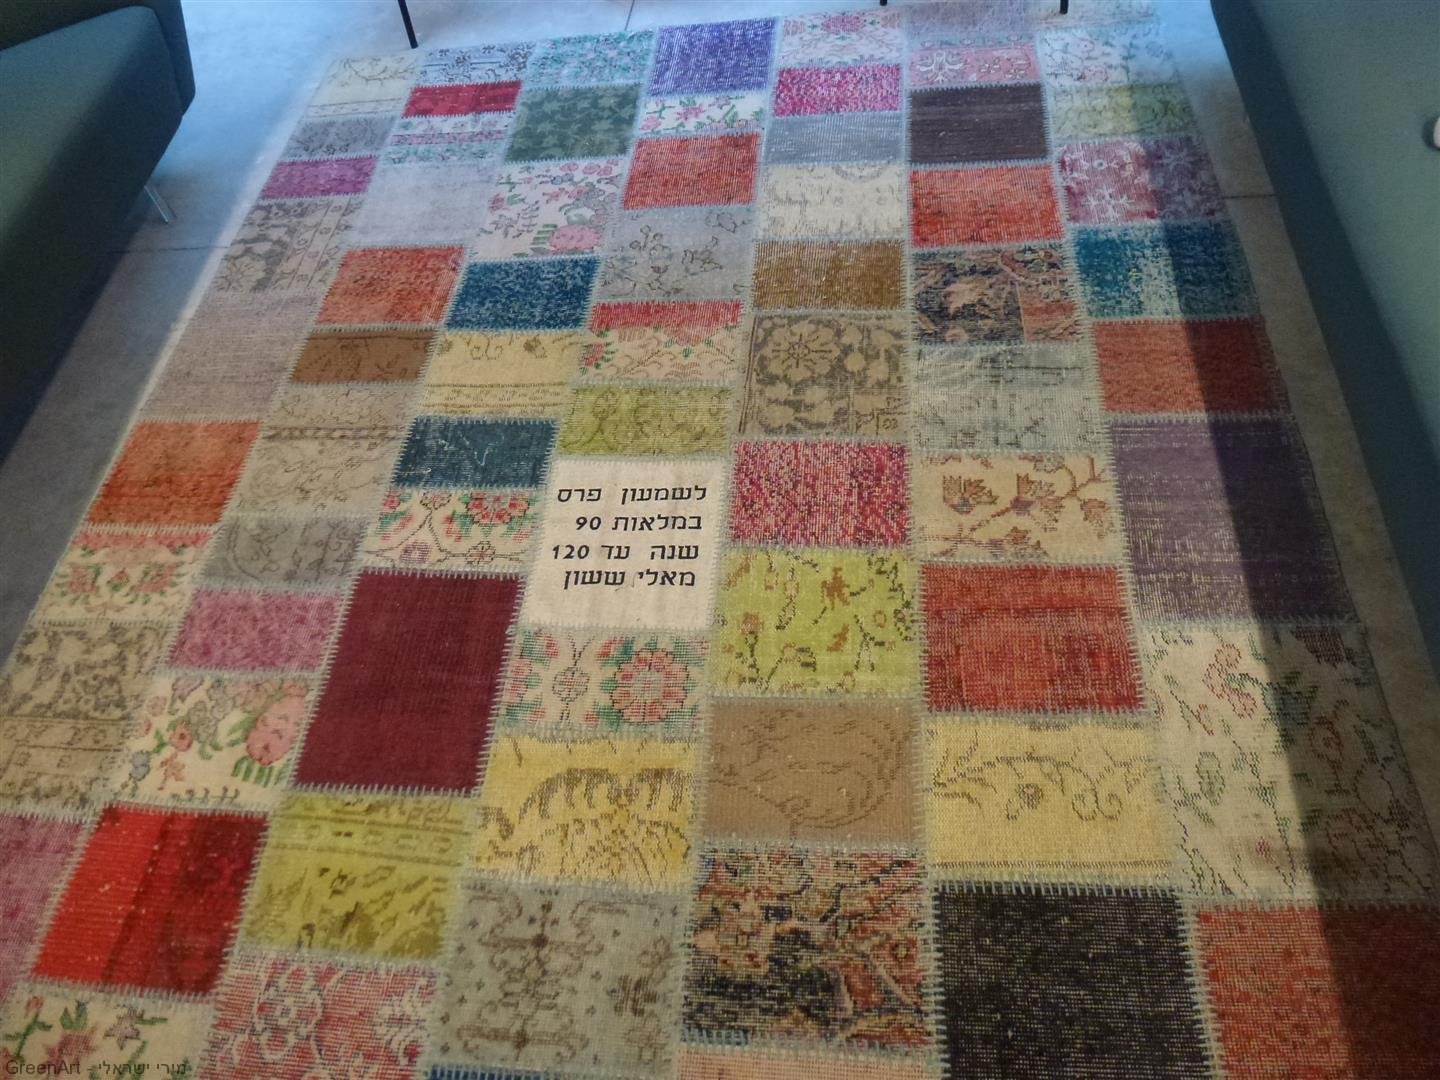 שטיח מתנה מאלי ששון לשמעון פרס המוצג בספרייה במרכז פרס לשלום